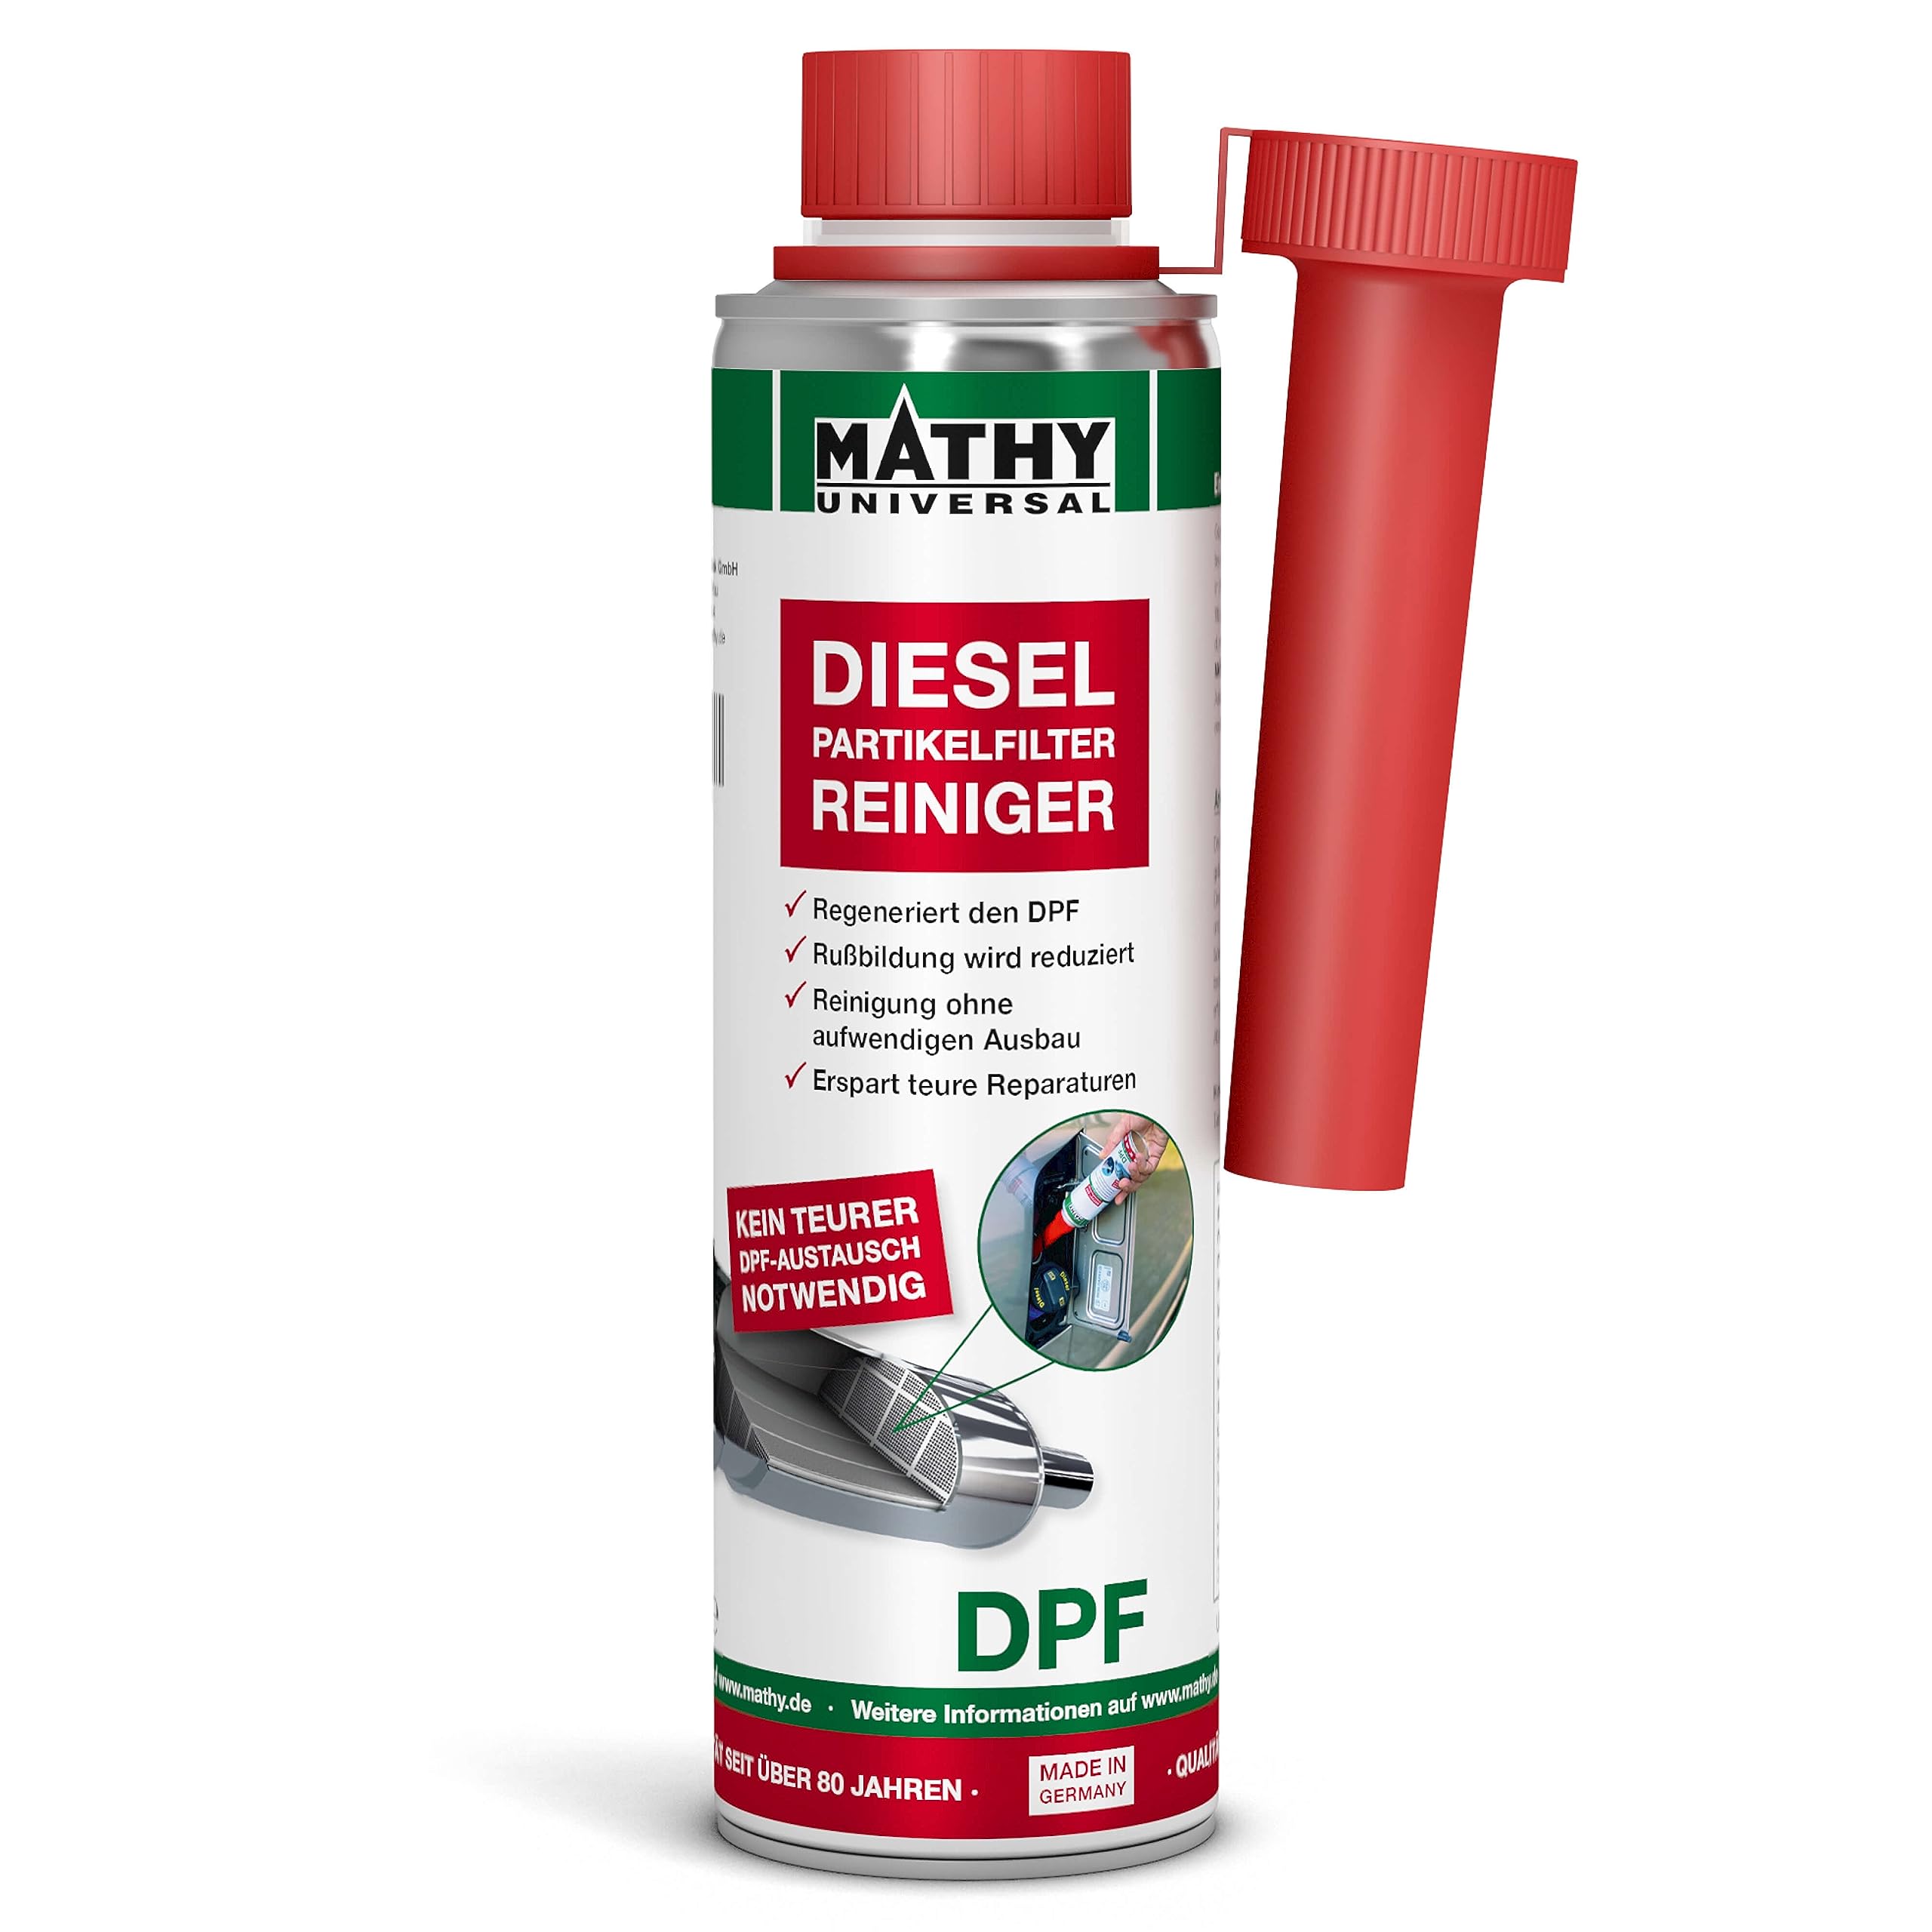 MATHY-DPF Partikelfilter Reiniger Diesel - DPF Reiniger - Diesel Systemreiniger für Dieselmotoren - Diesel Additiv, 300 ml